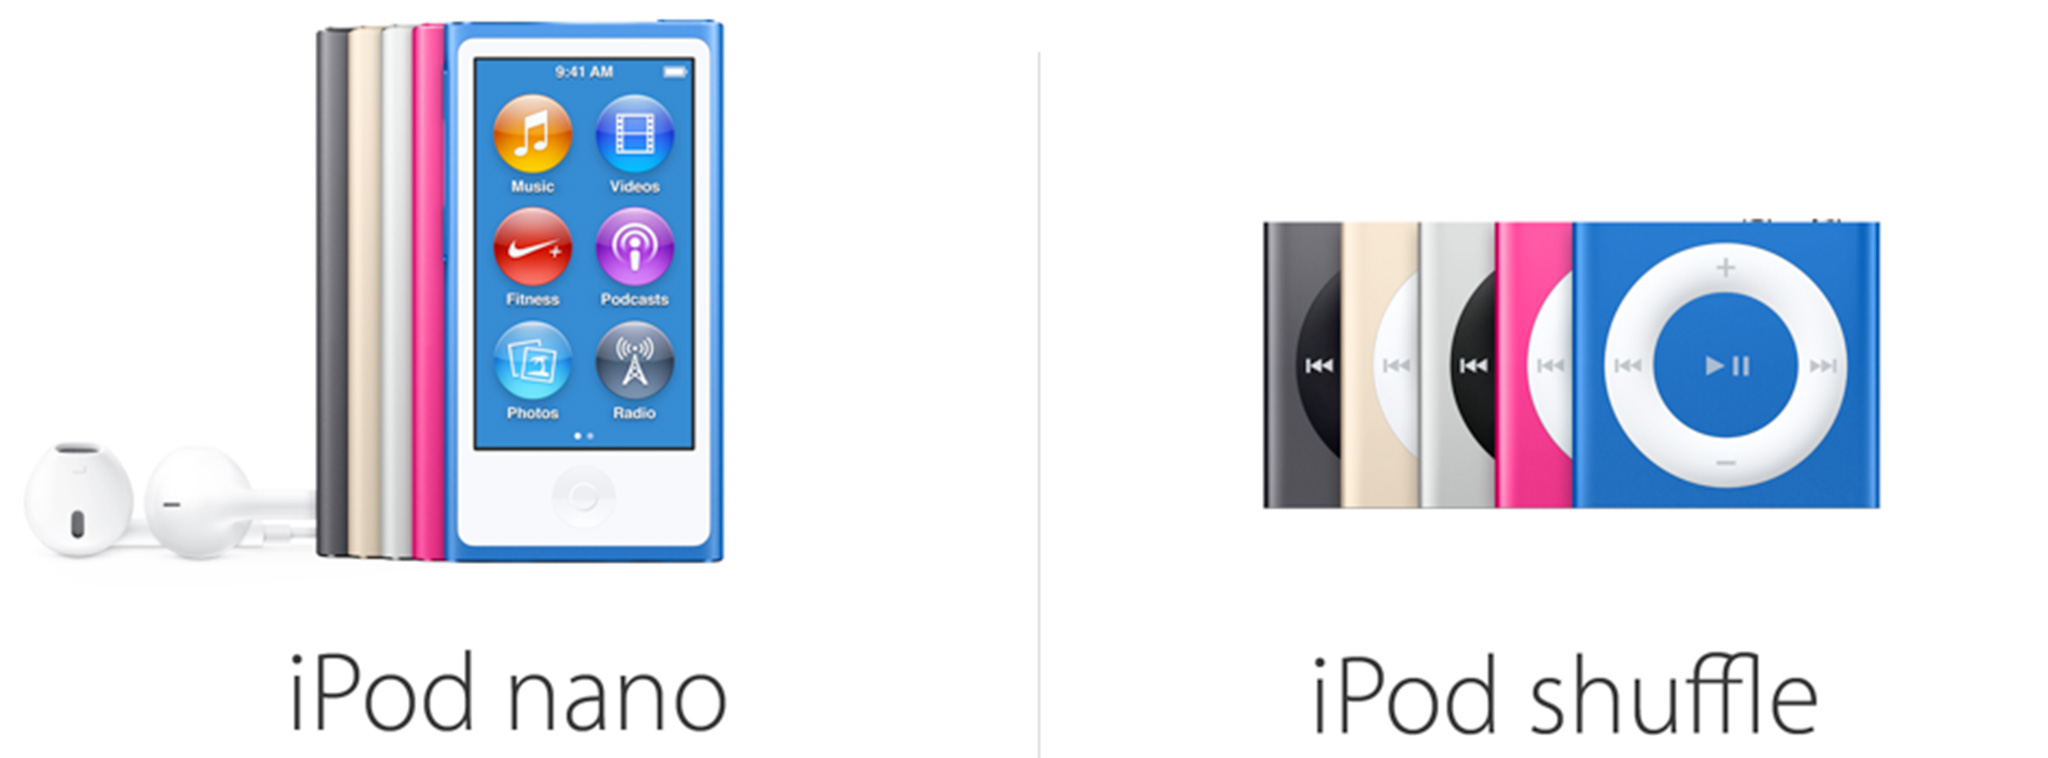 Apple ngừng bán iPod Nano và iPod Shuffle, điều chỉnh giá cho các phiên bản iPod Touch